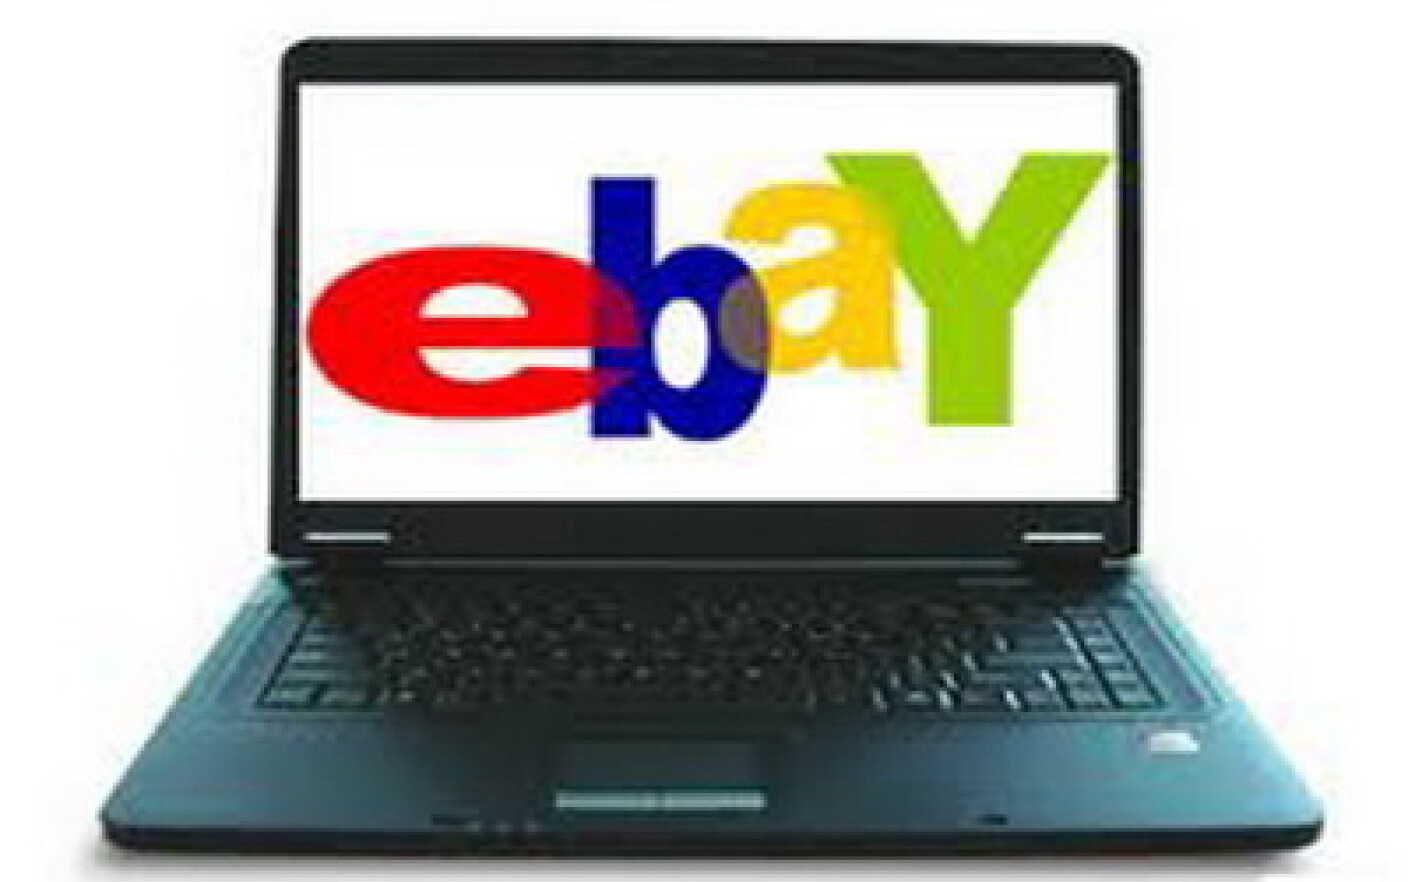 Cât te costă să vinzi produse pe eBay